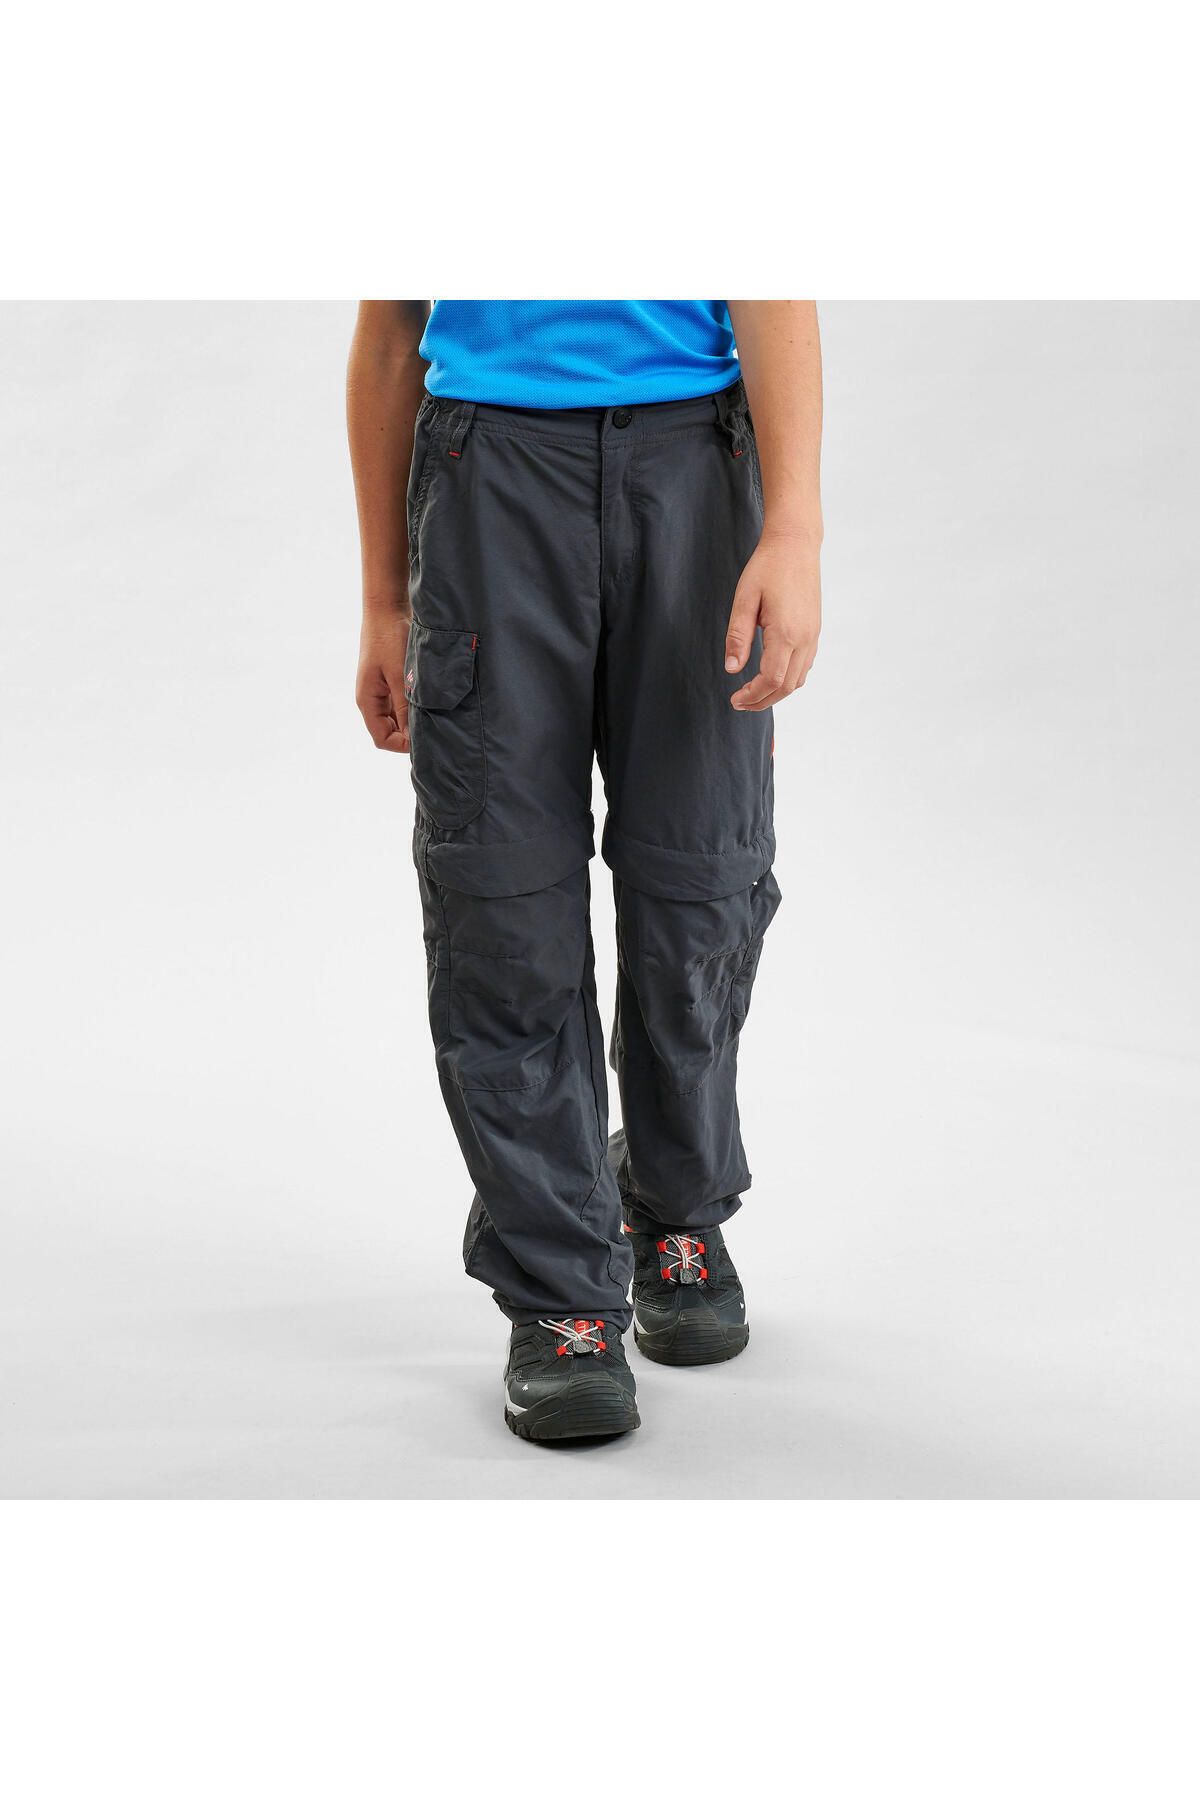 Decathlon Çocuk Modüler Outdoor Pantolon - 7 / 15 Yaş - Siyah - Mh500